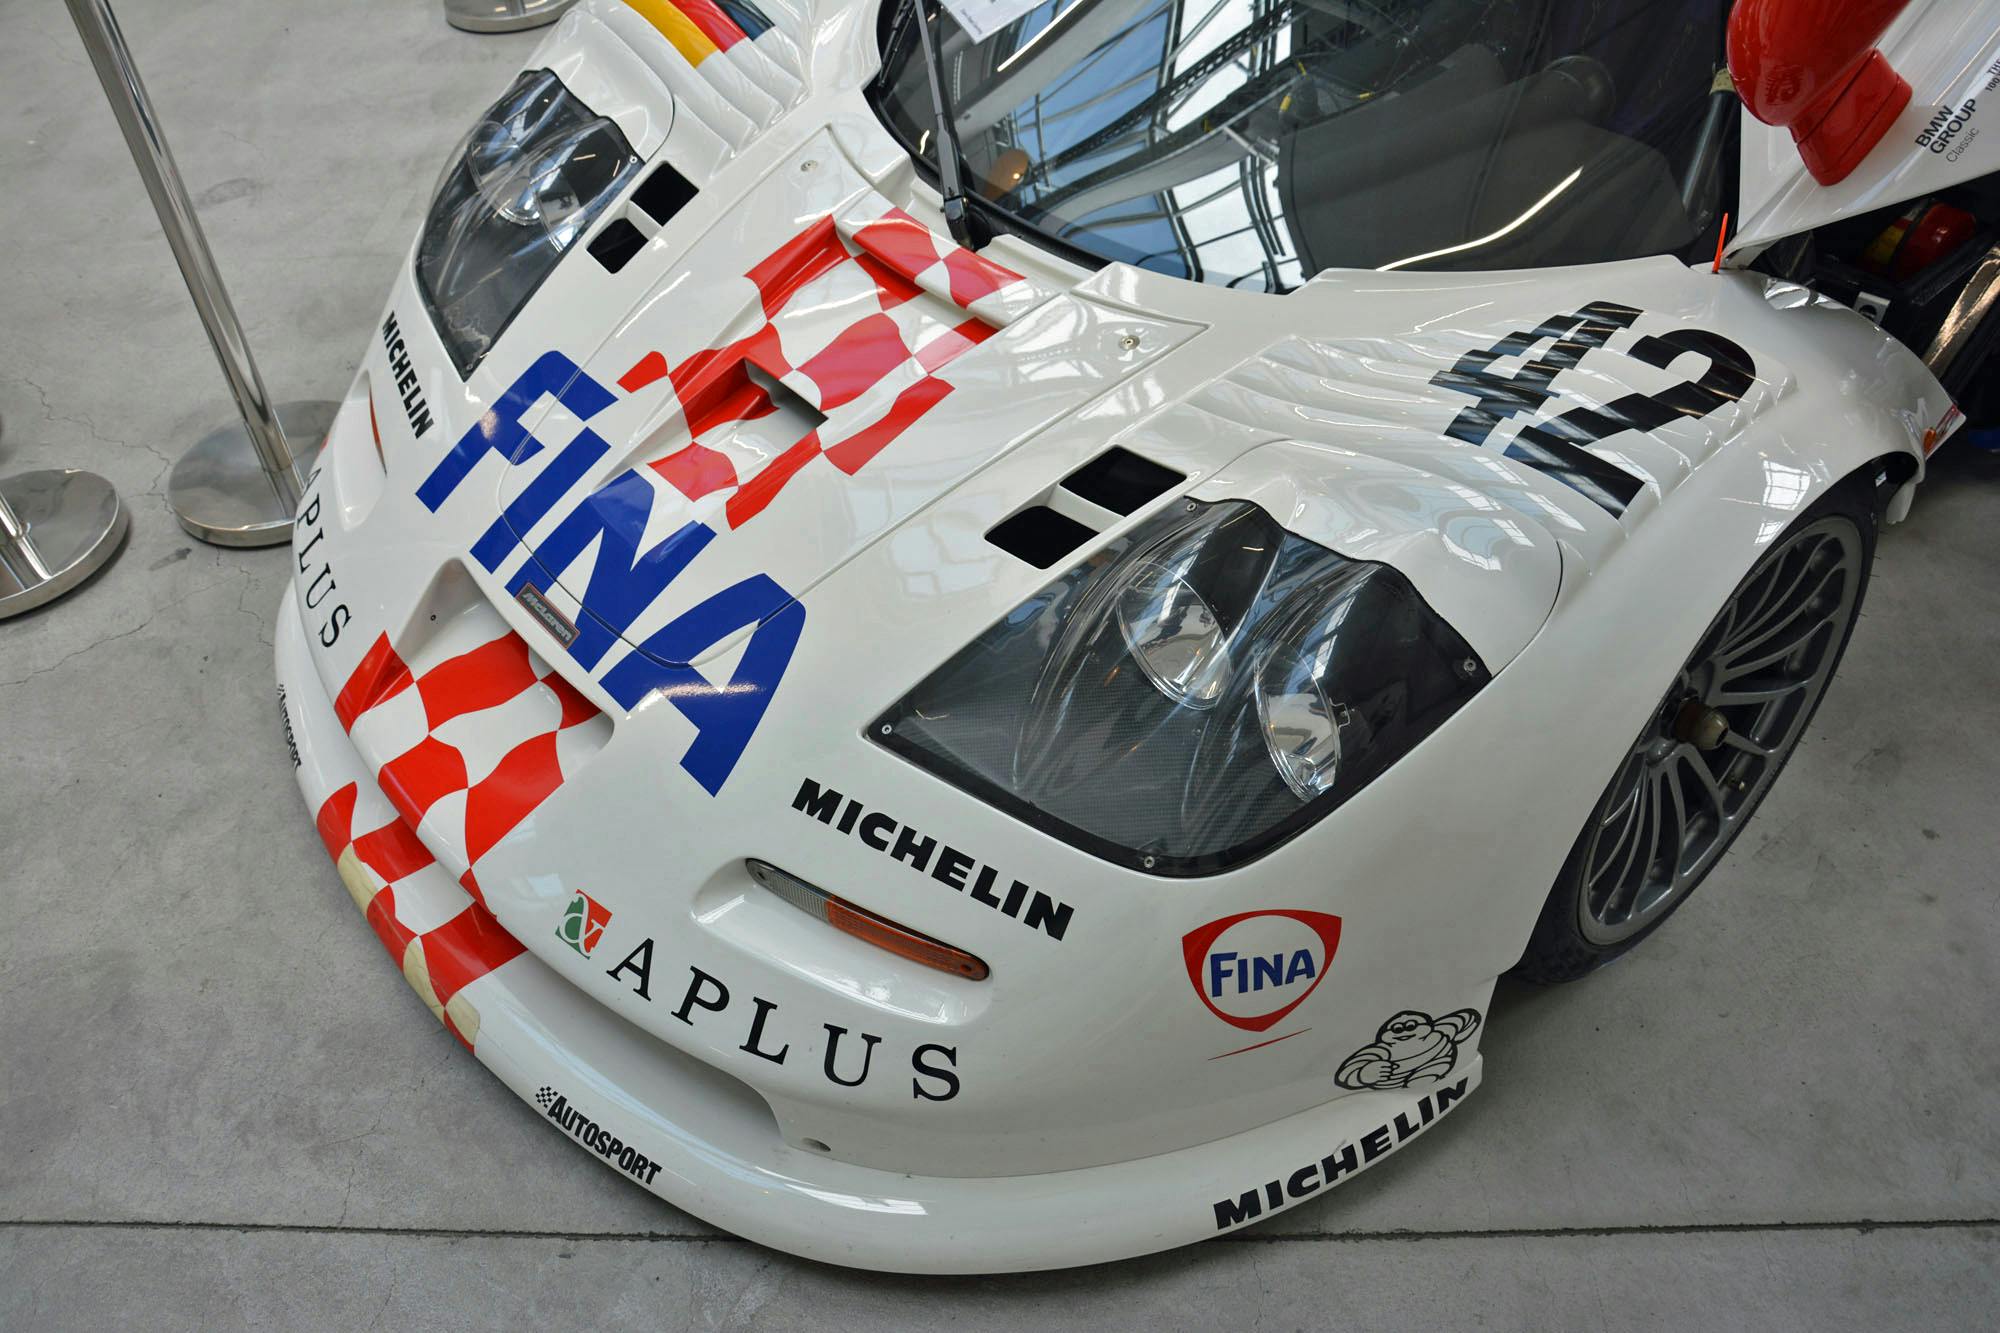 bmw classic center munich McLaren F1 GTR